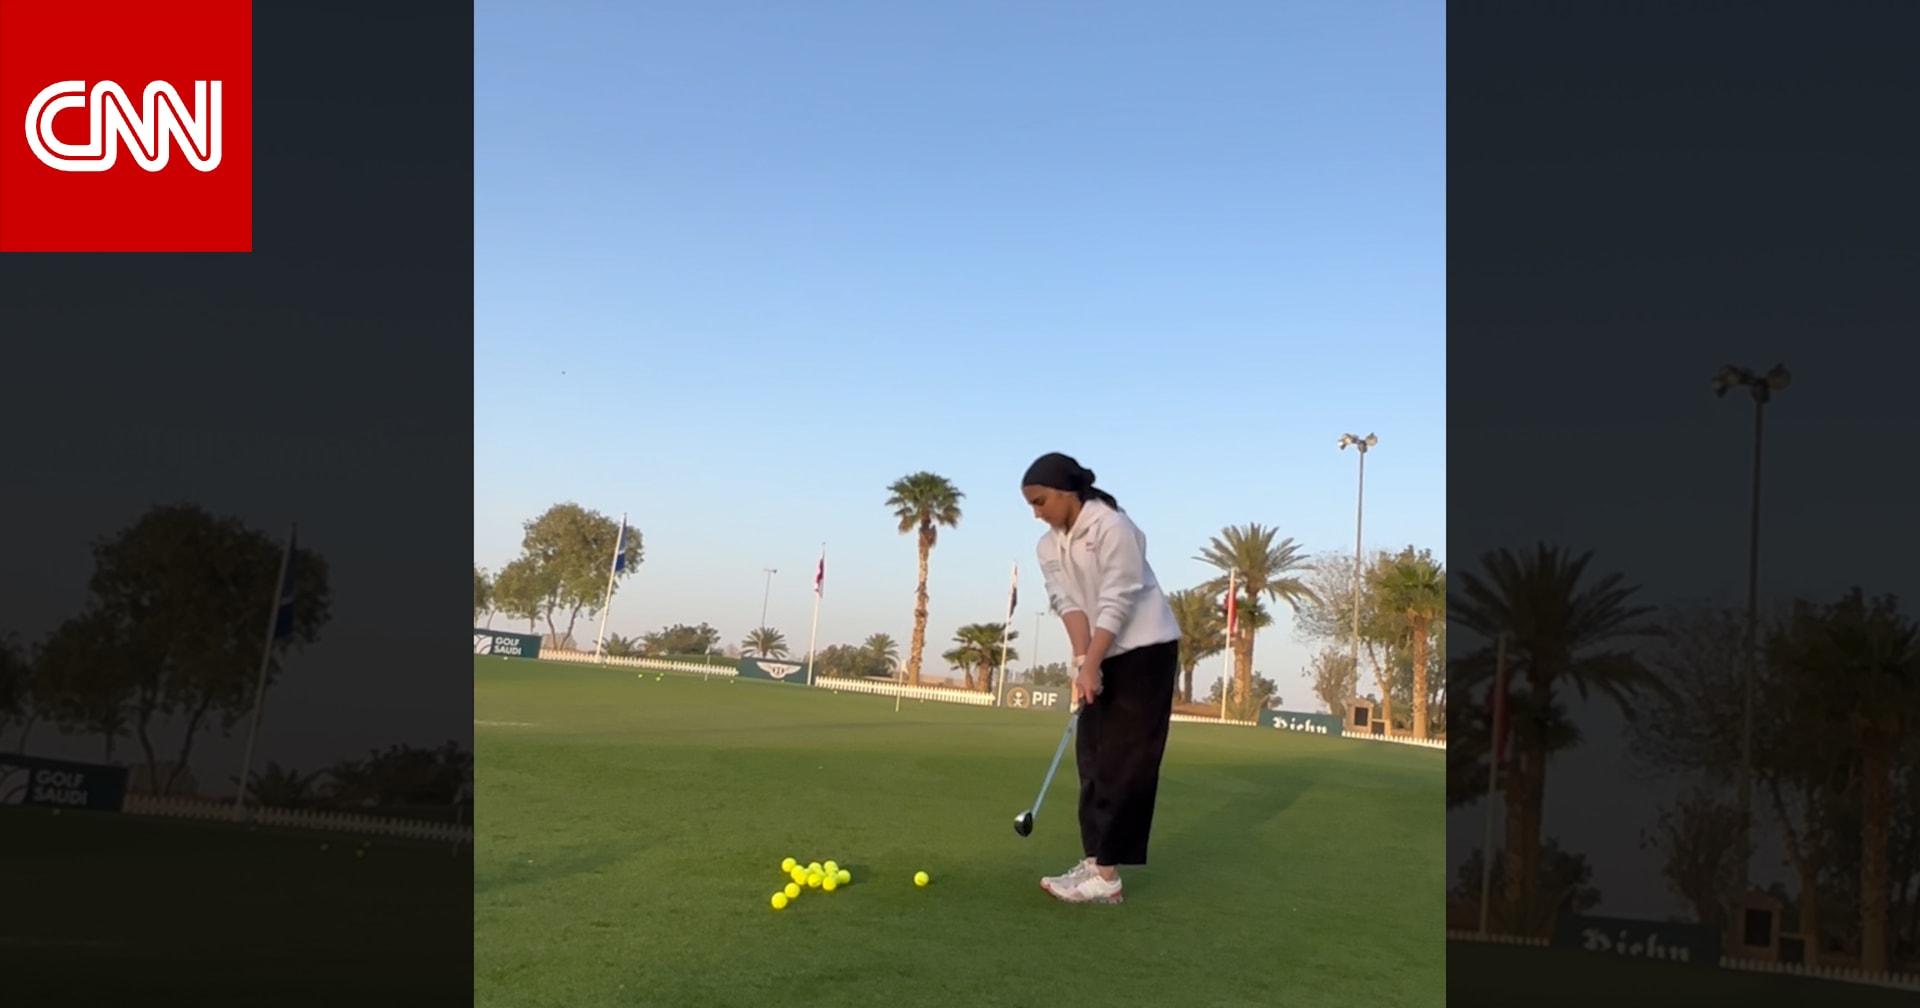 سعودية تقع بحبّ الغولف بسبب نصحية طبيب طنّت أنه يُمازحها في البداية